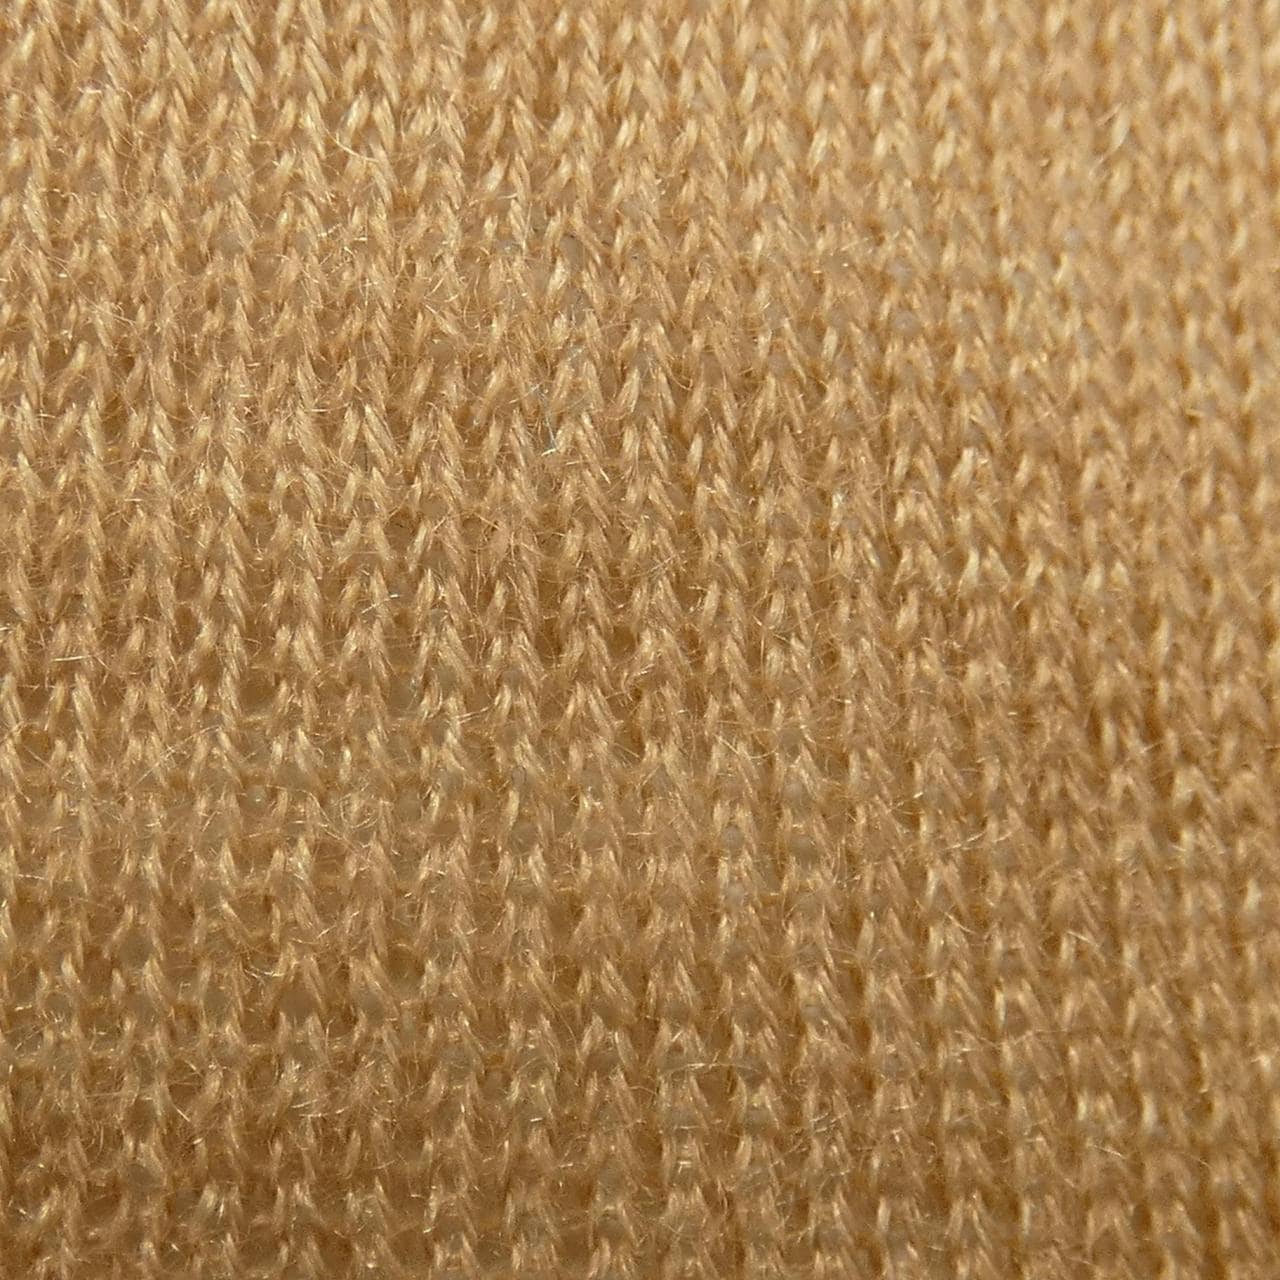 CURRENTAGE Knit